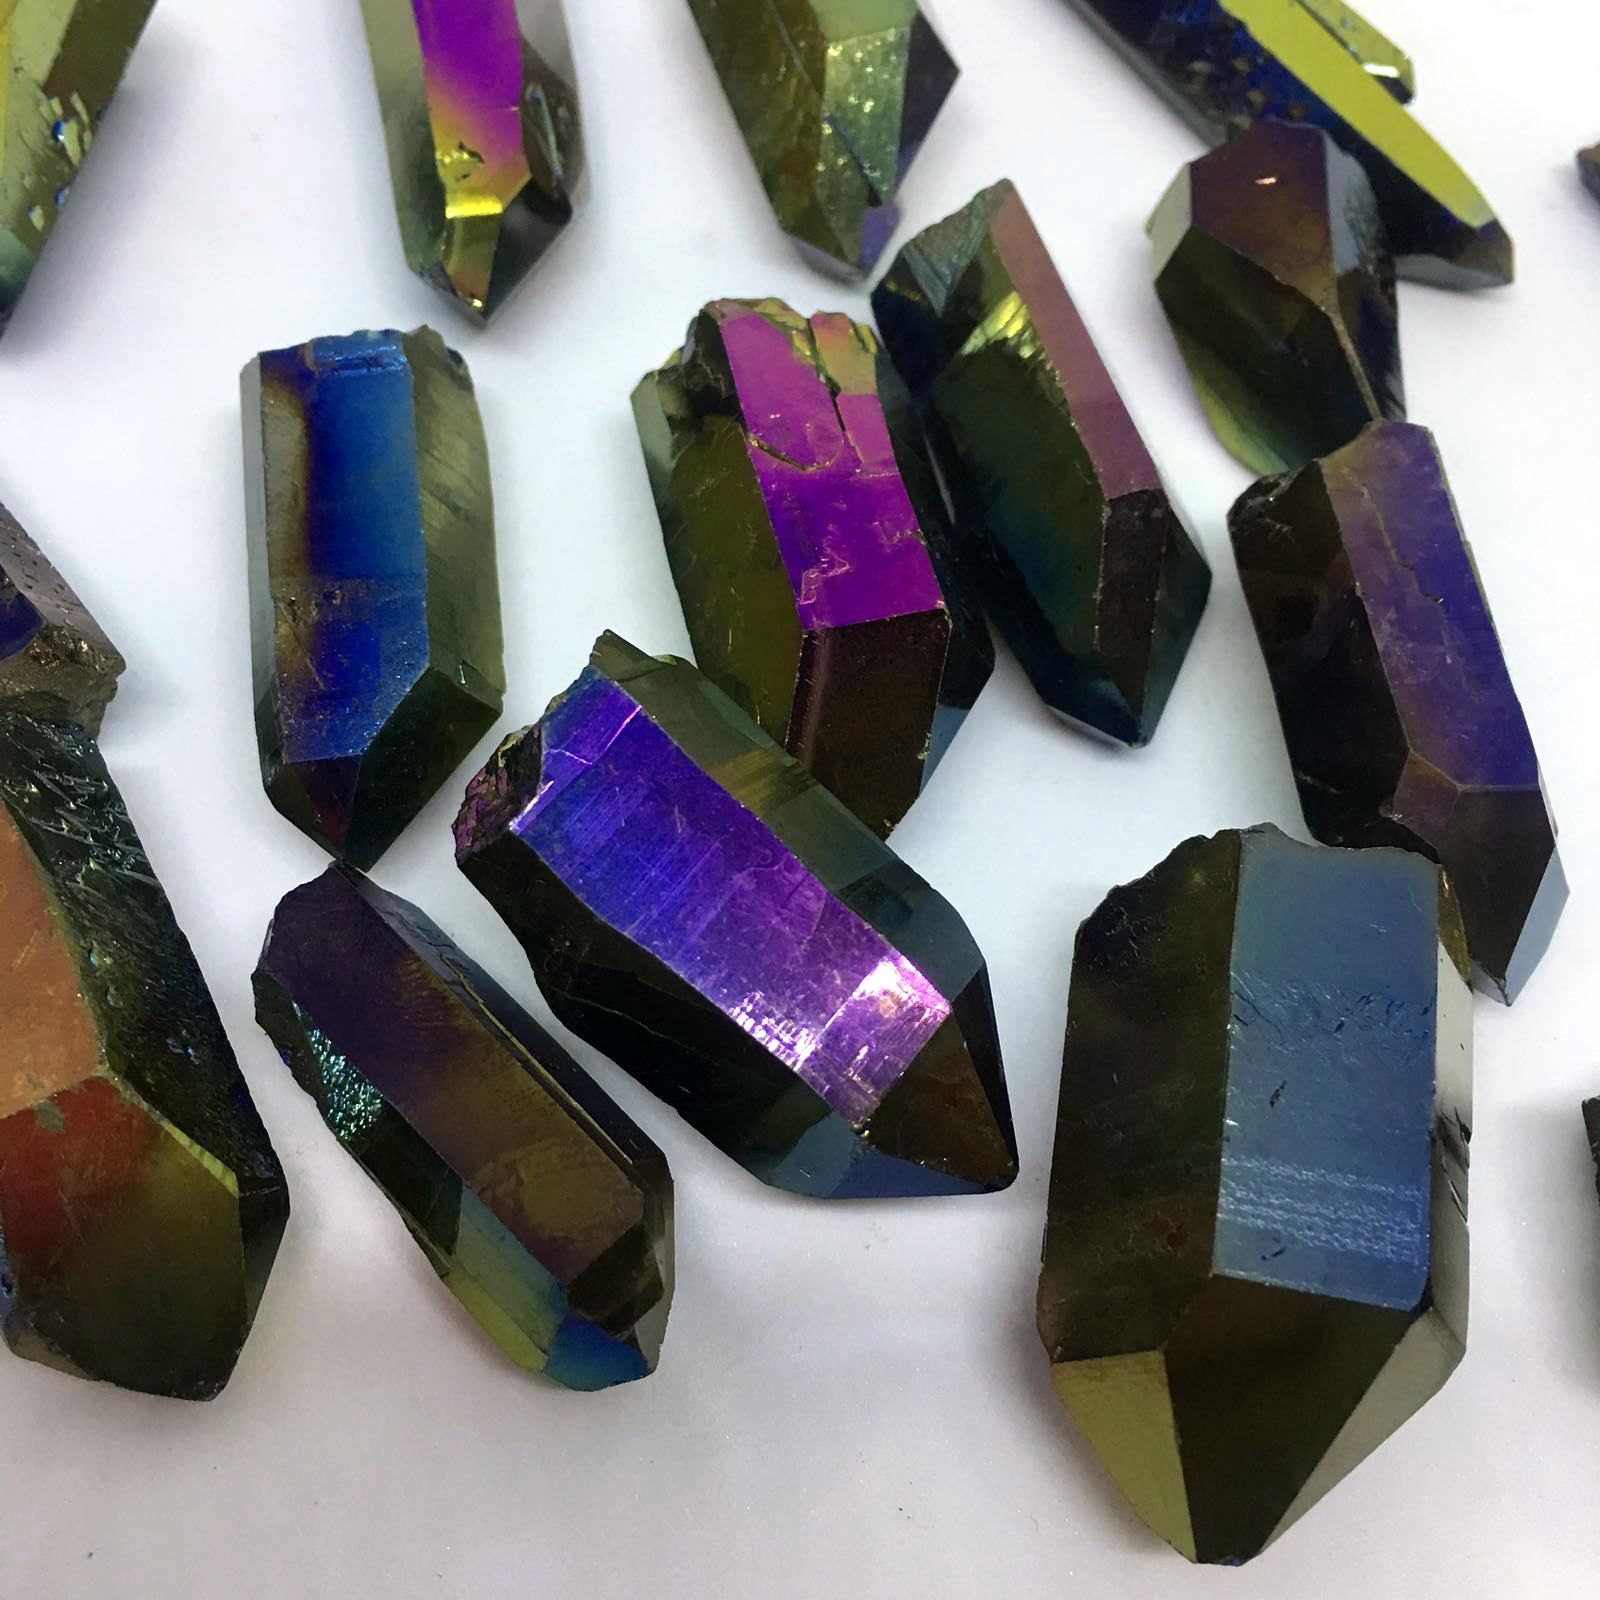 Stones from Uruguay - Rainbow Titanium Quartz Points